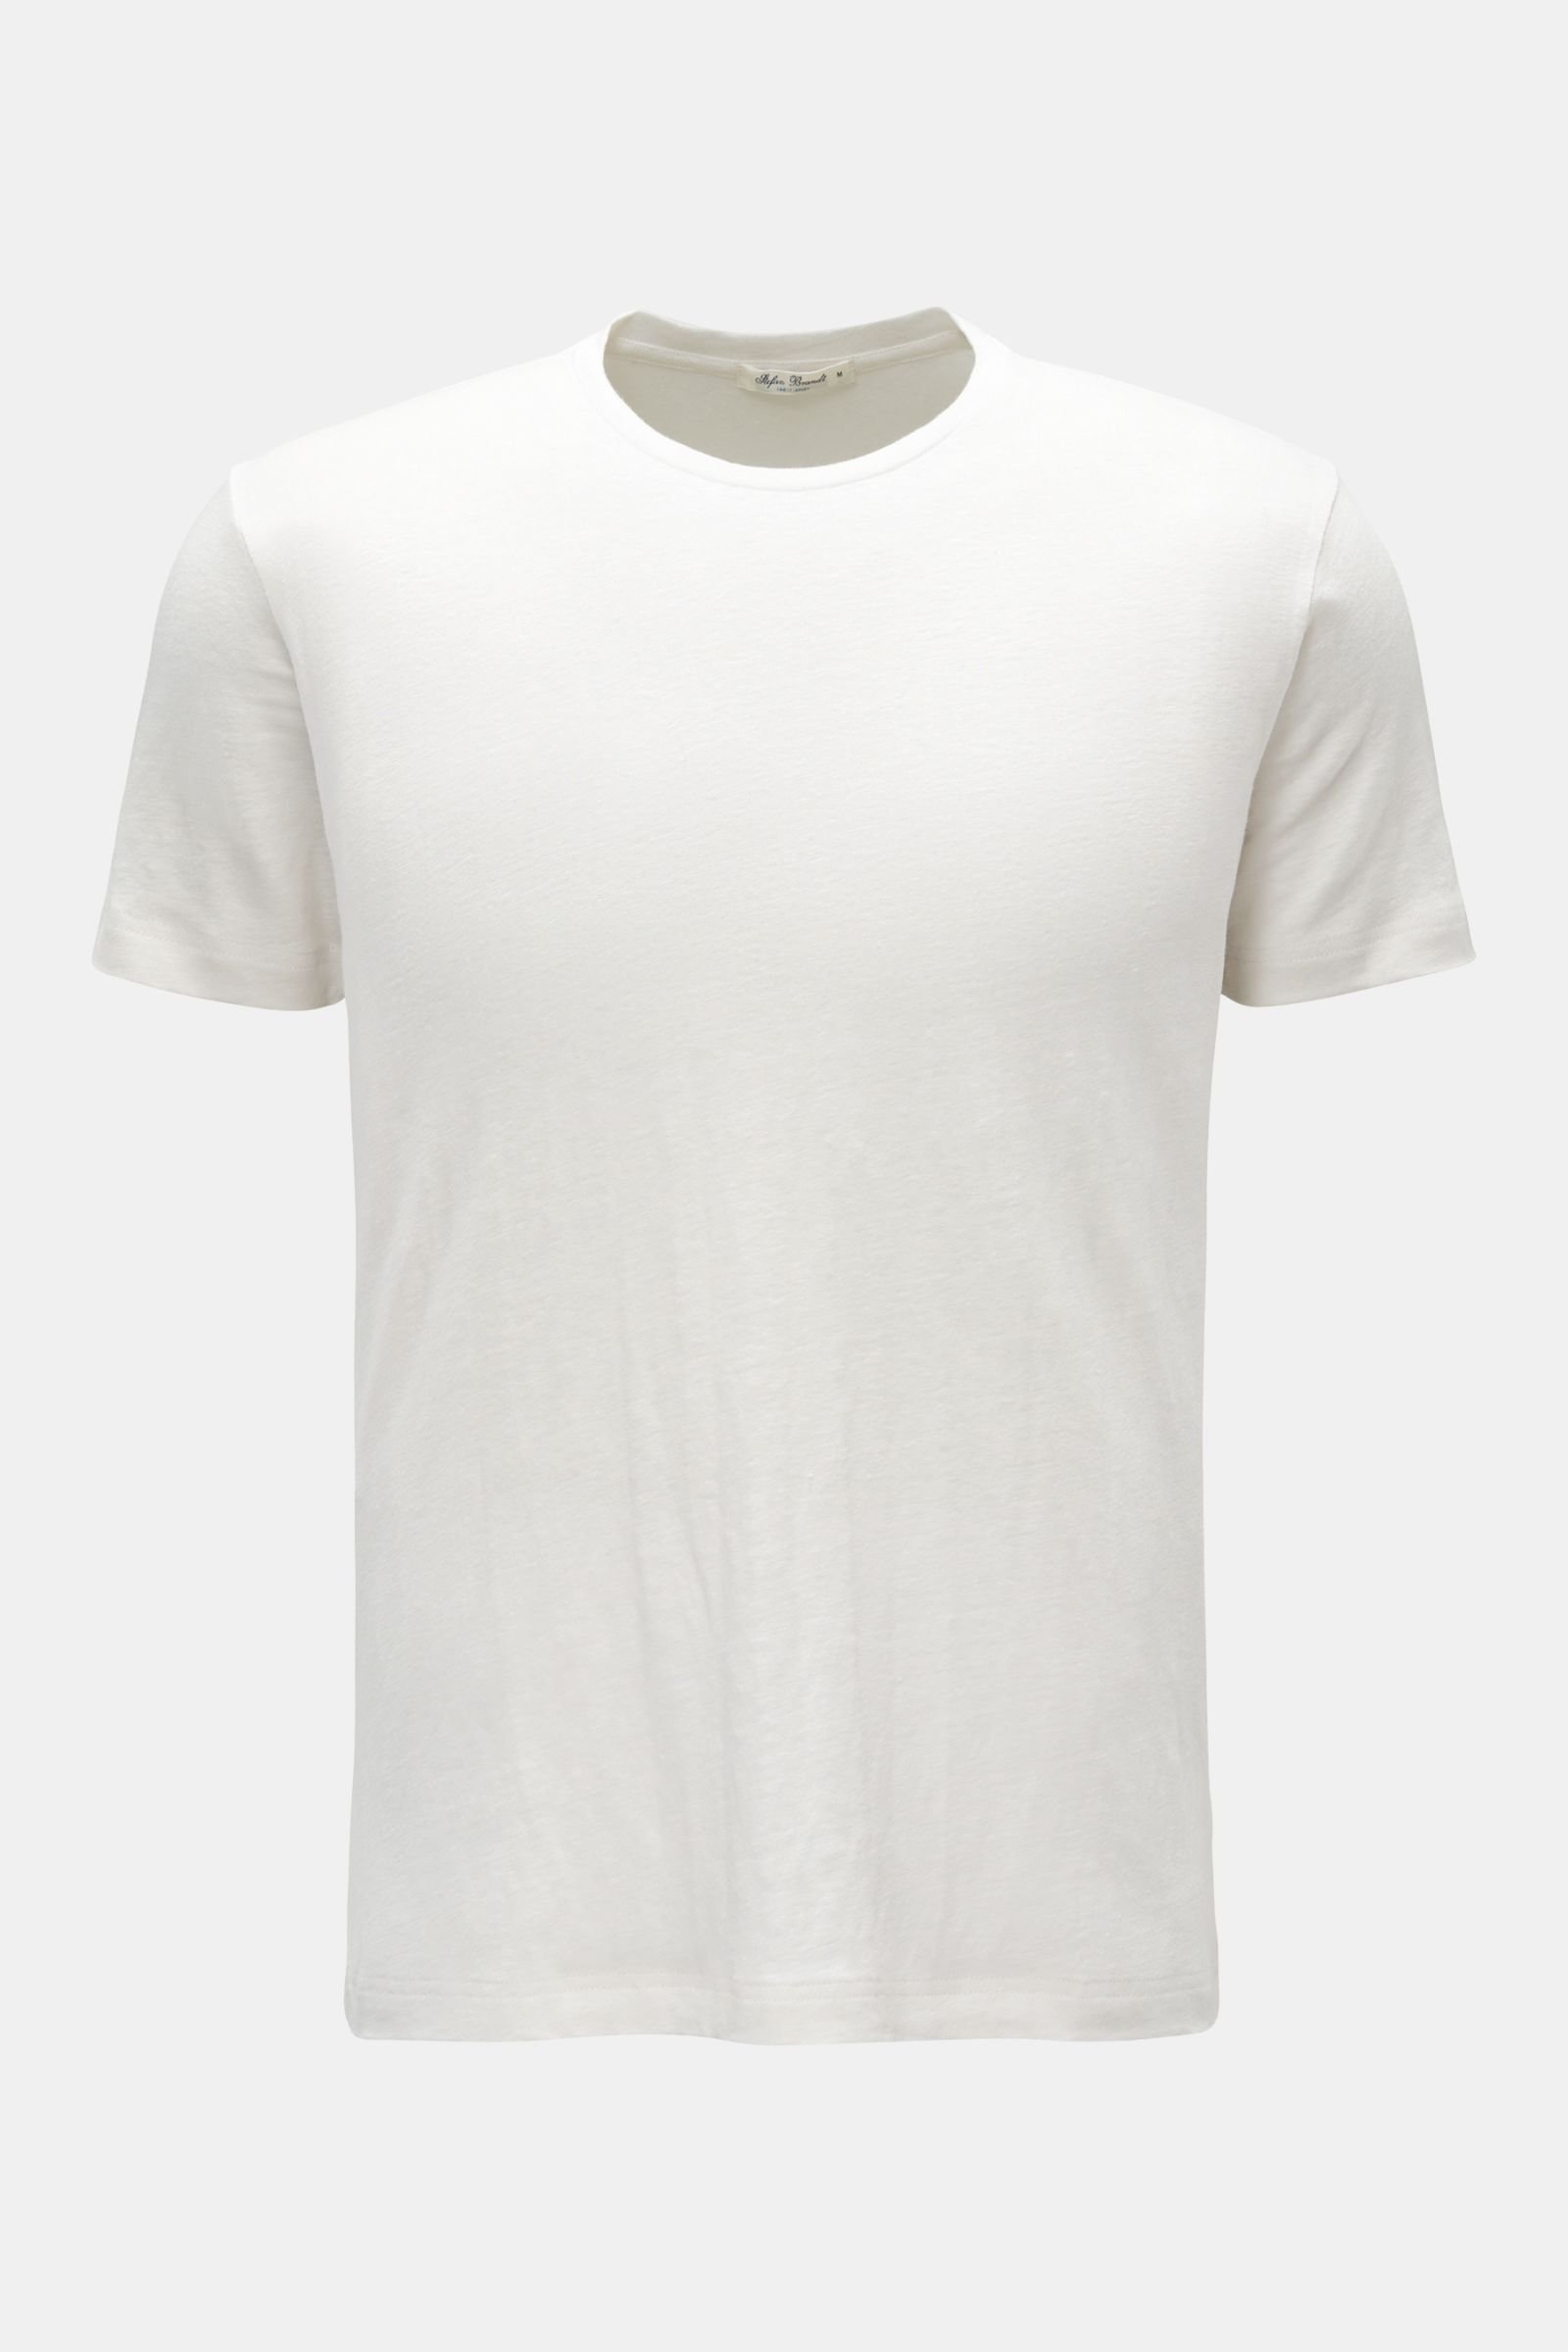 Leinen Rundhals-T-Shirt 'Enno' offwhite